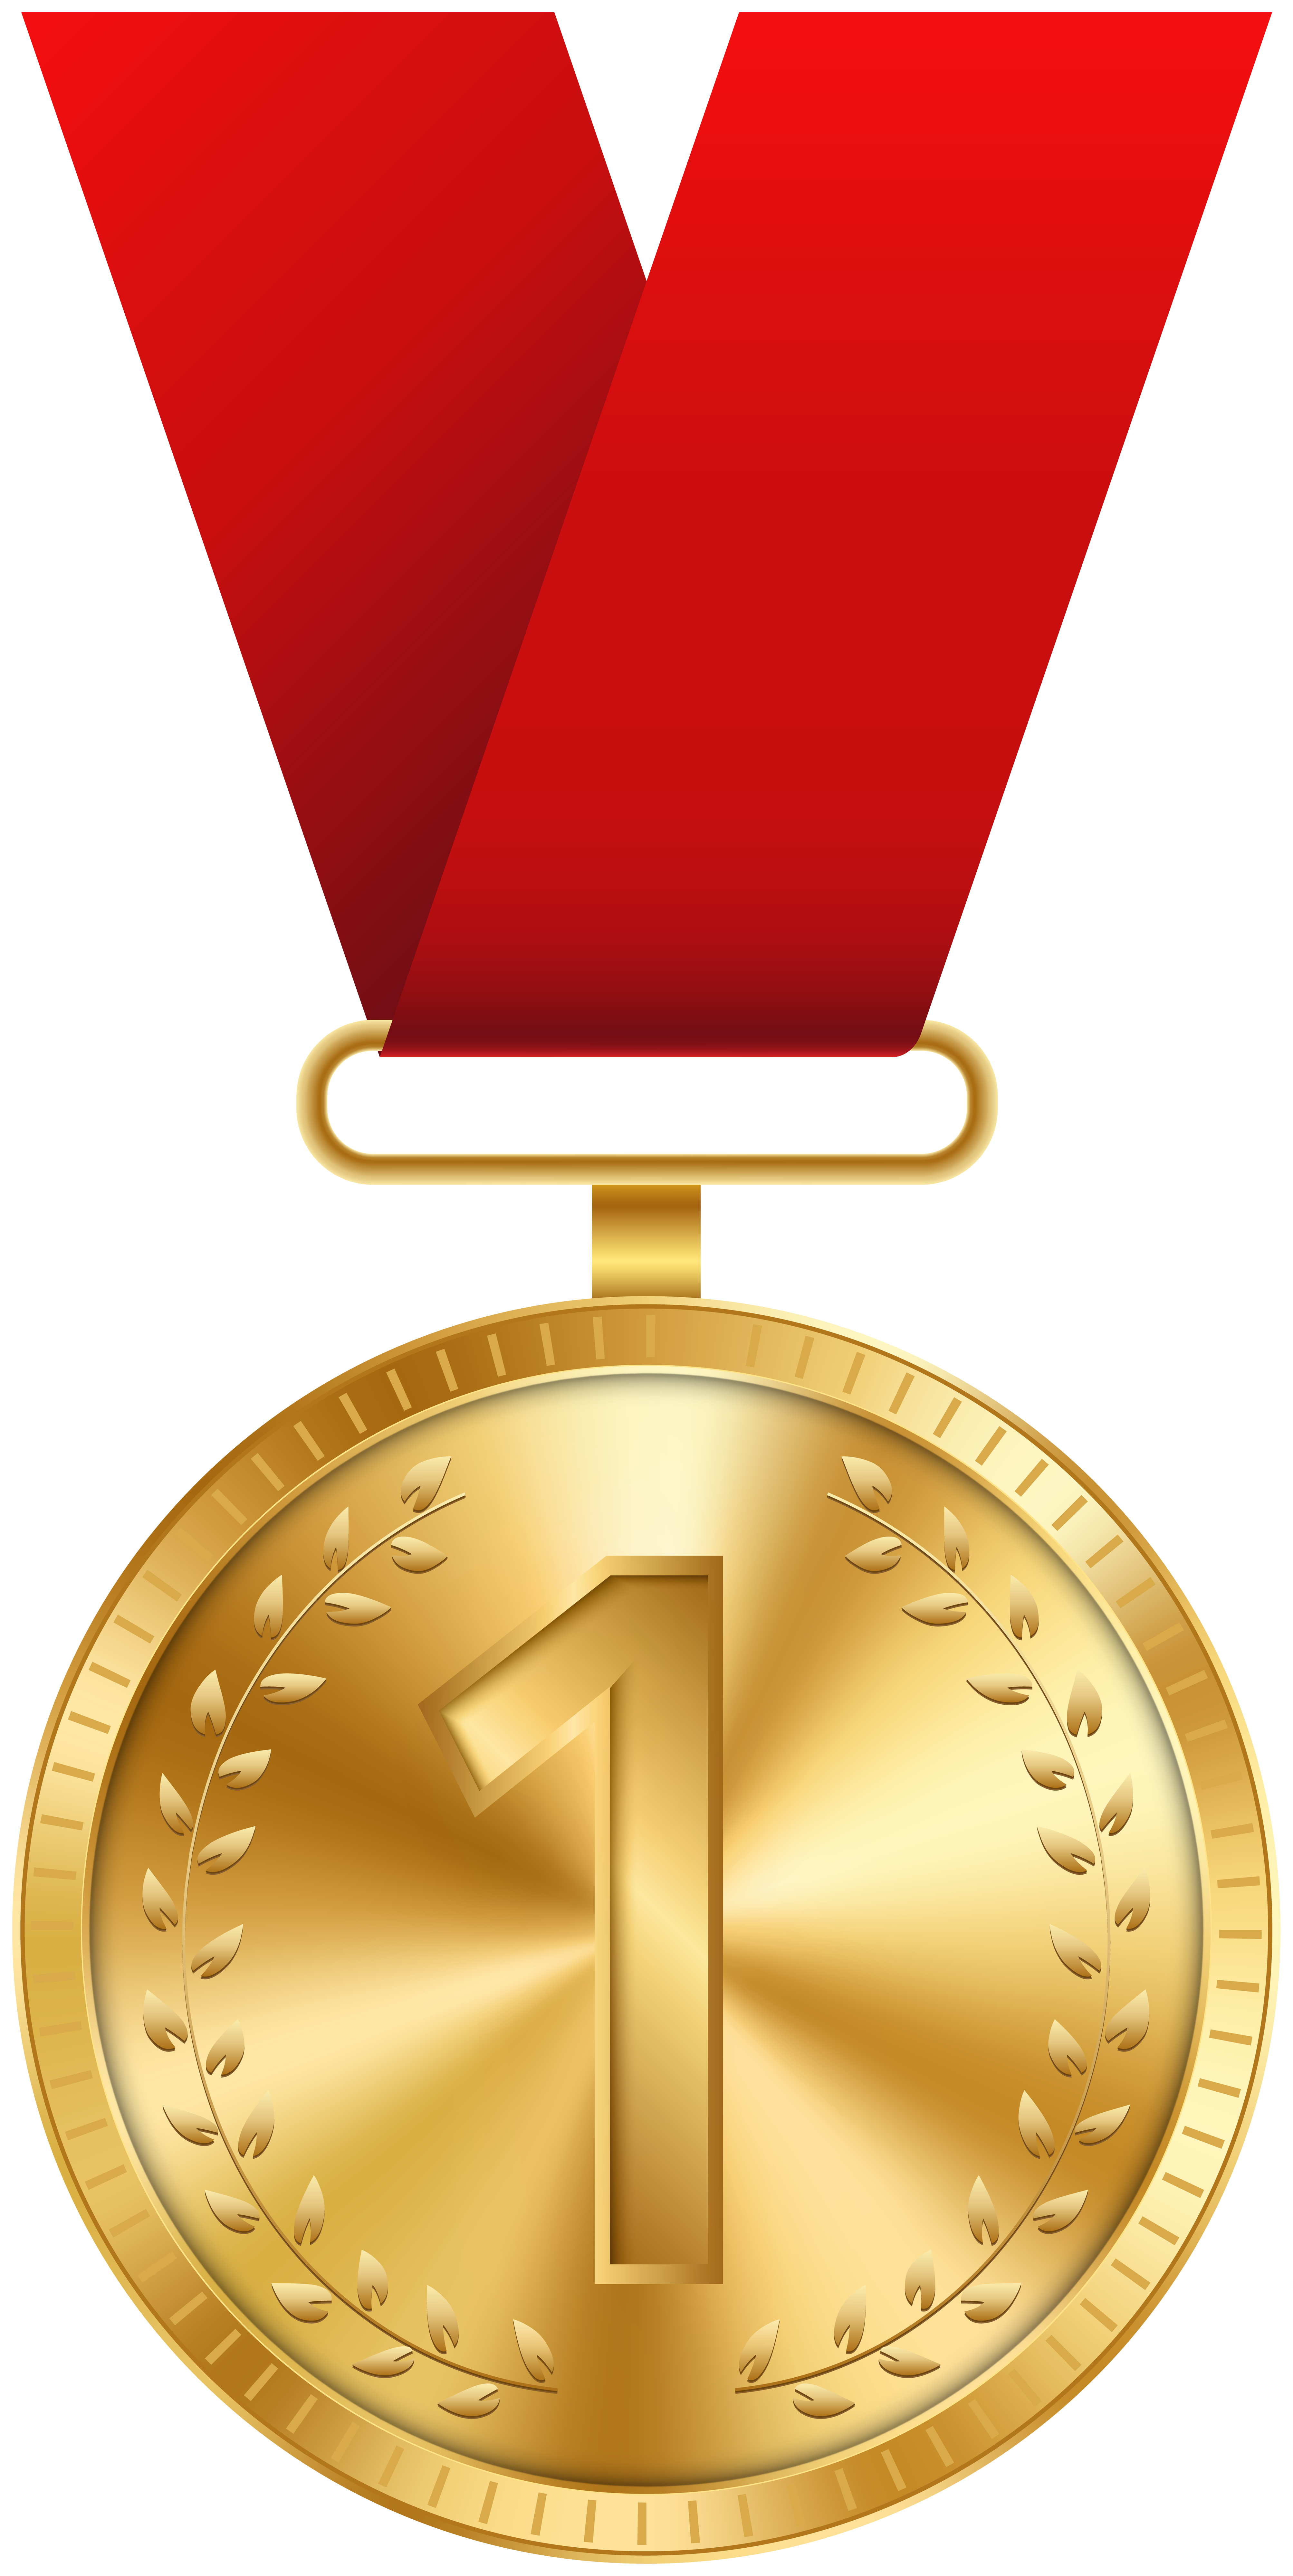 Gold Medal PNG Clip Art Image.